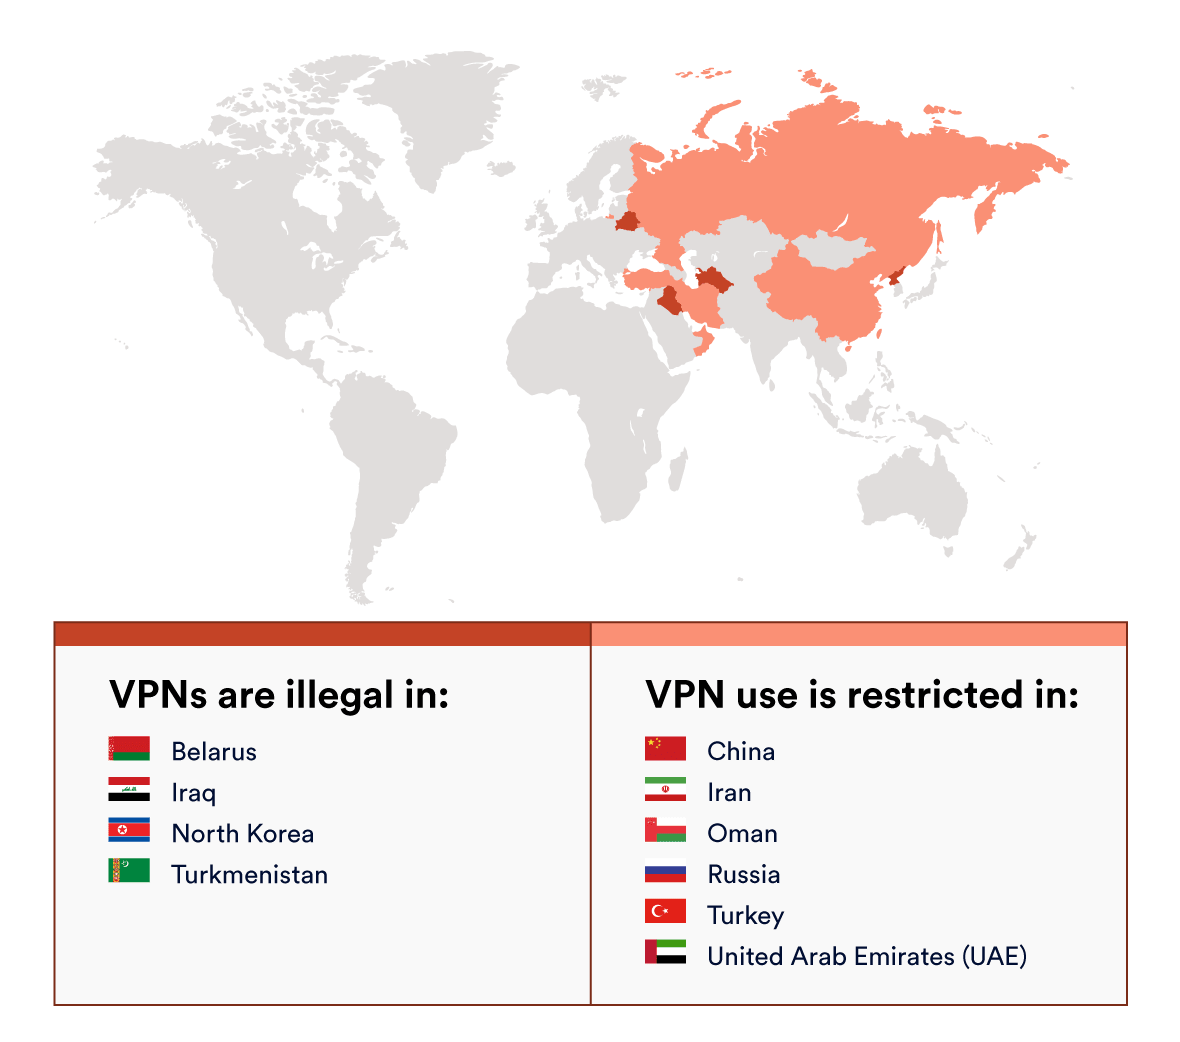 VPNが違法または制限されている場所を示すマップ